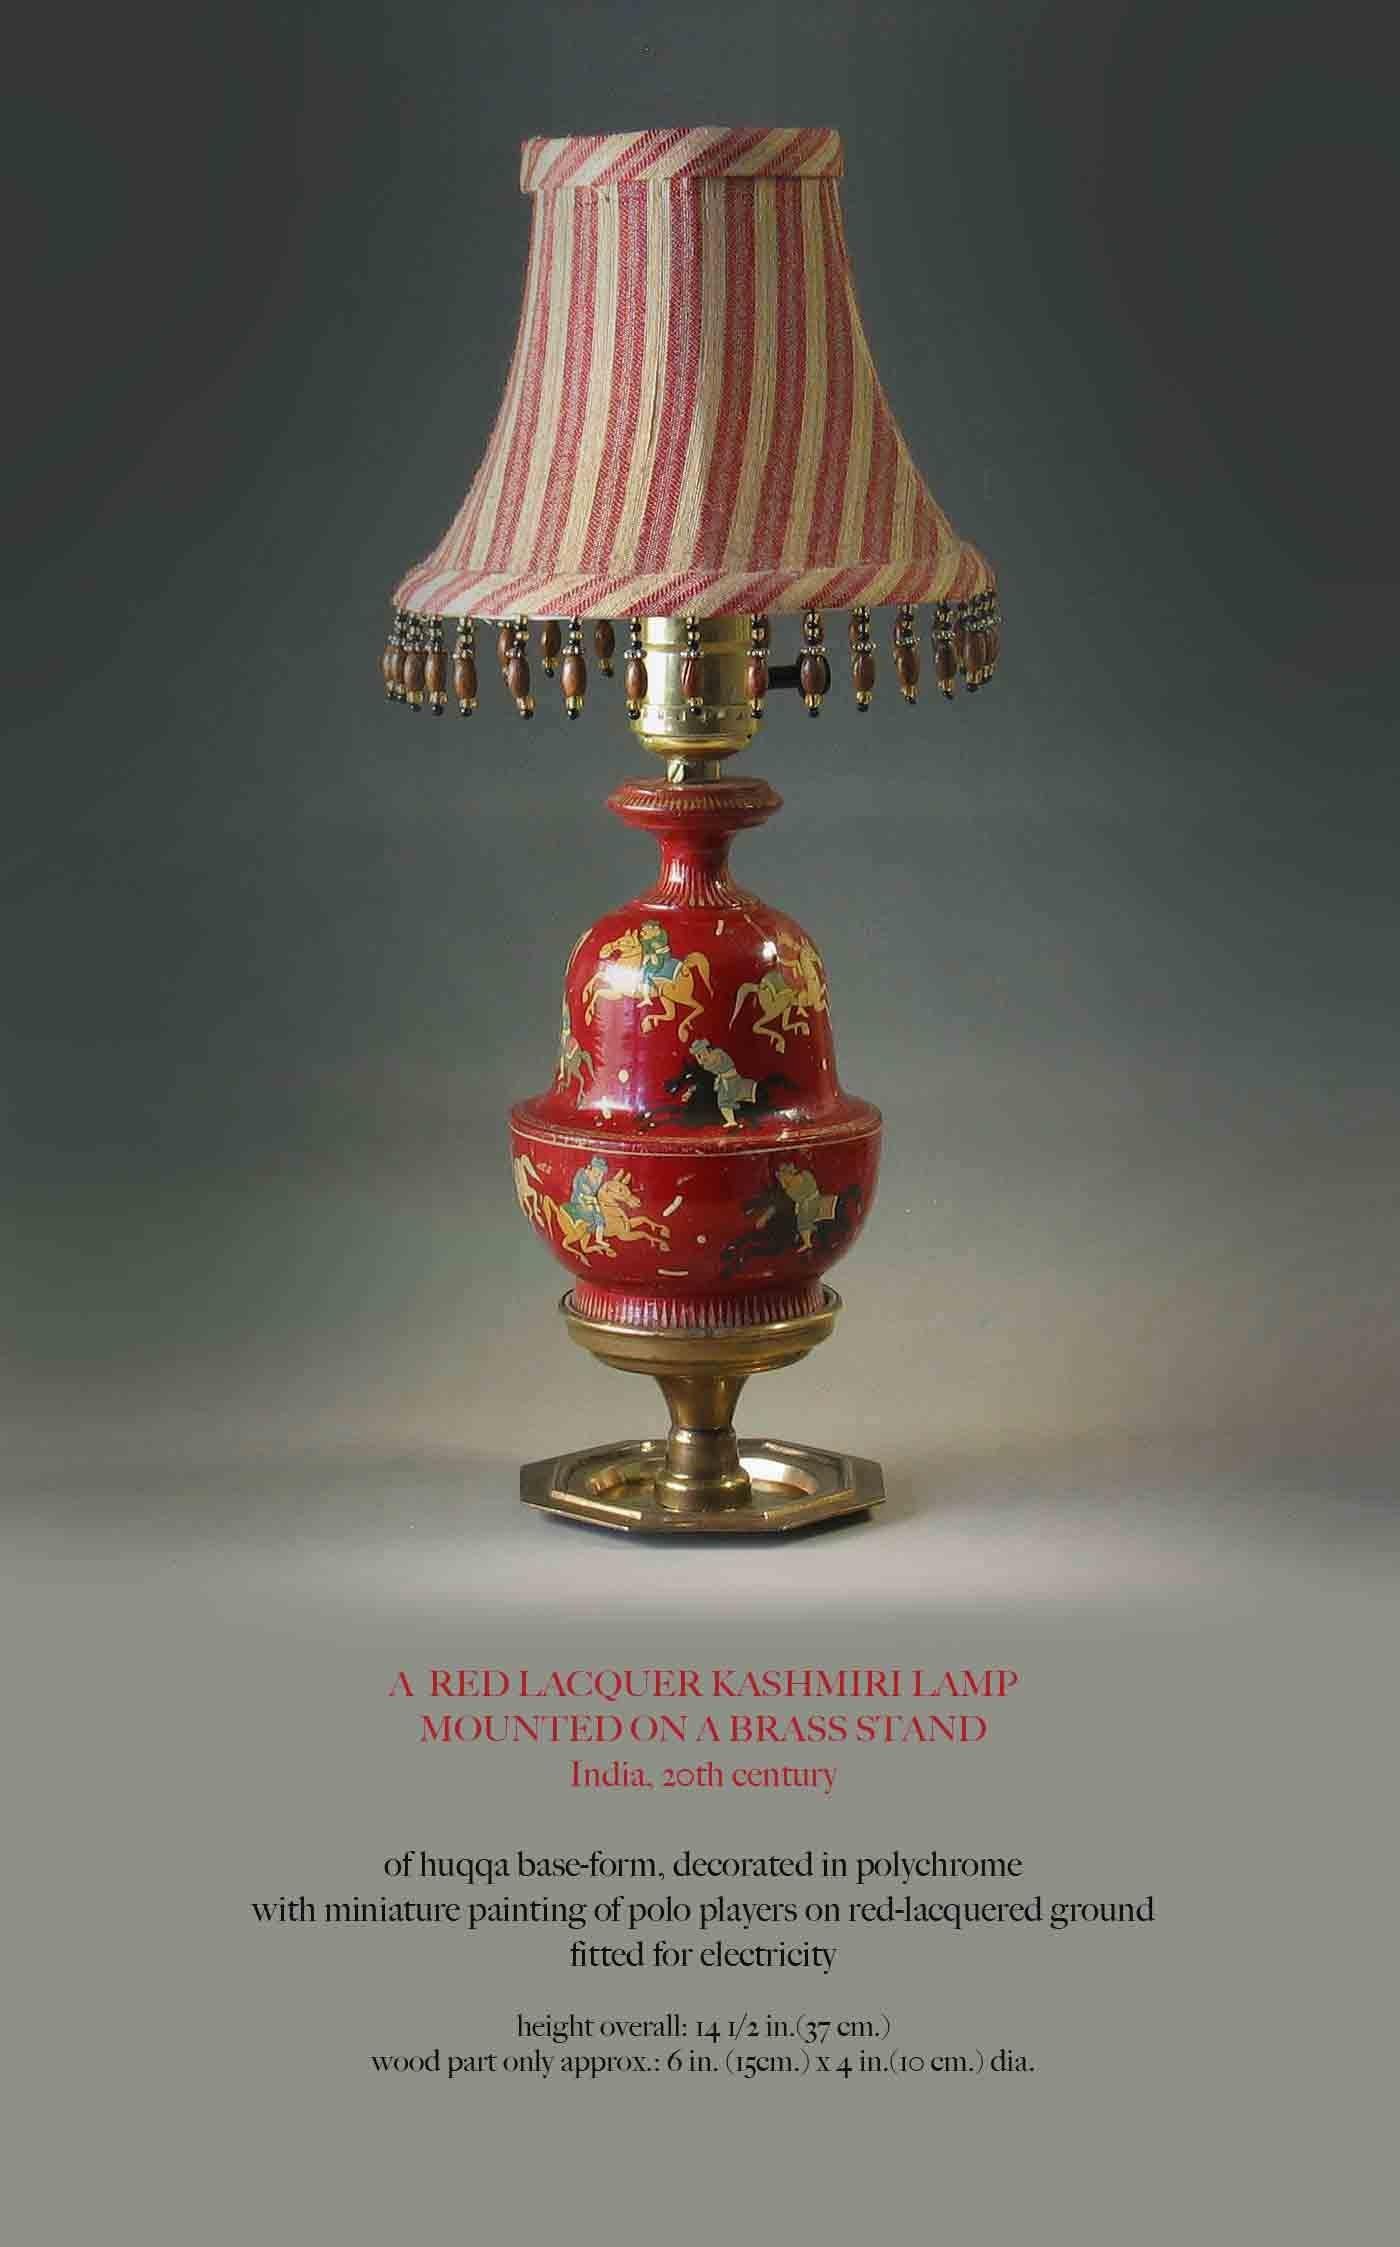 Lampe cachemirienne en laque rouge montée sur un pied en laiton, Inde, XXe siècle. Forme de base Huqqa, décorée en polychromie sur bois avec peinture miniature de joueurs de polo sur sol laqué rouge aménagé pour l'électricité. La lampe mesure 14 1/2